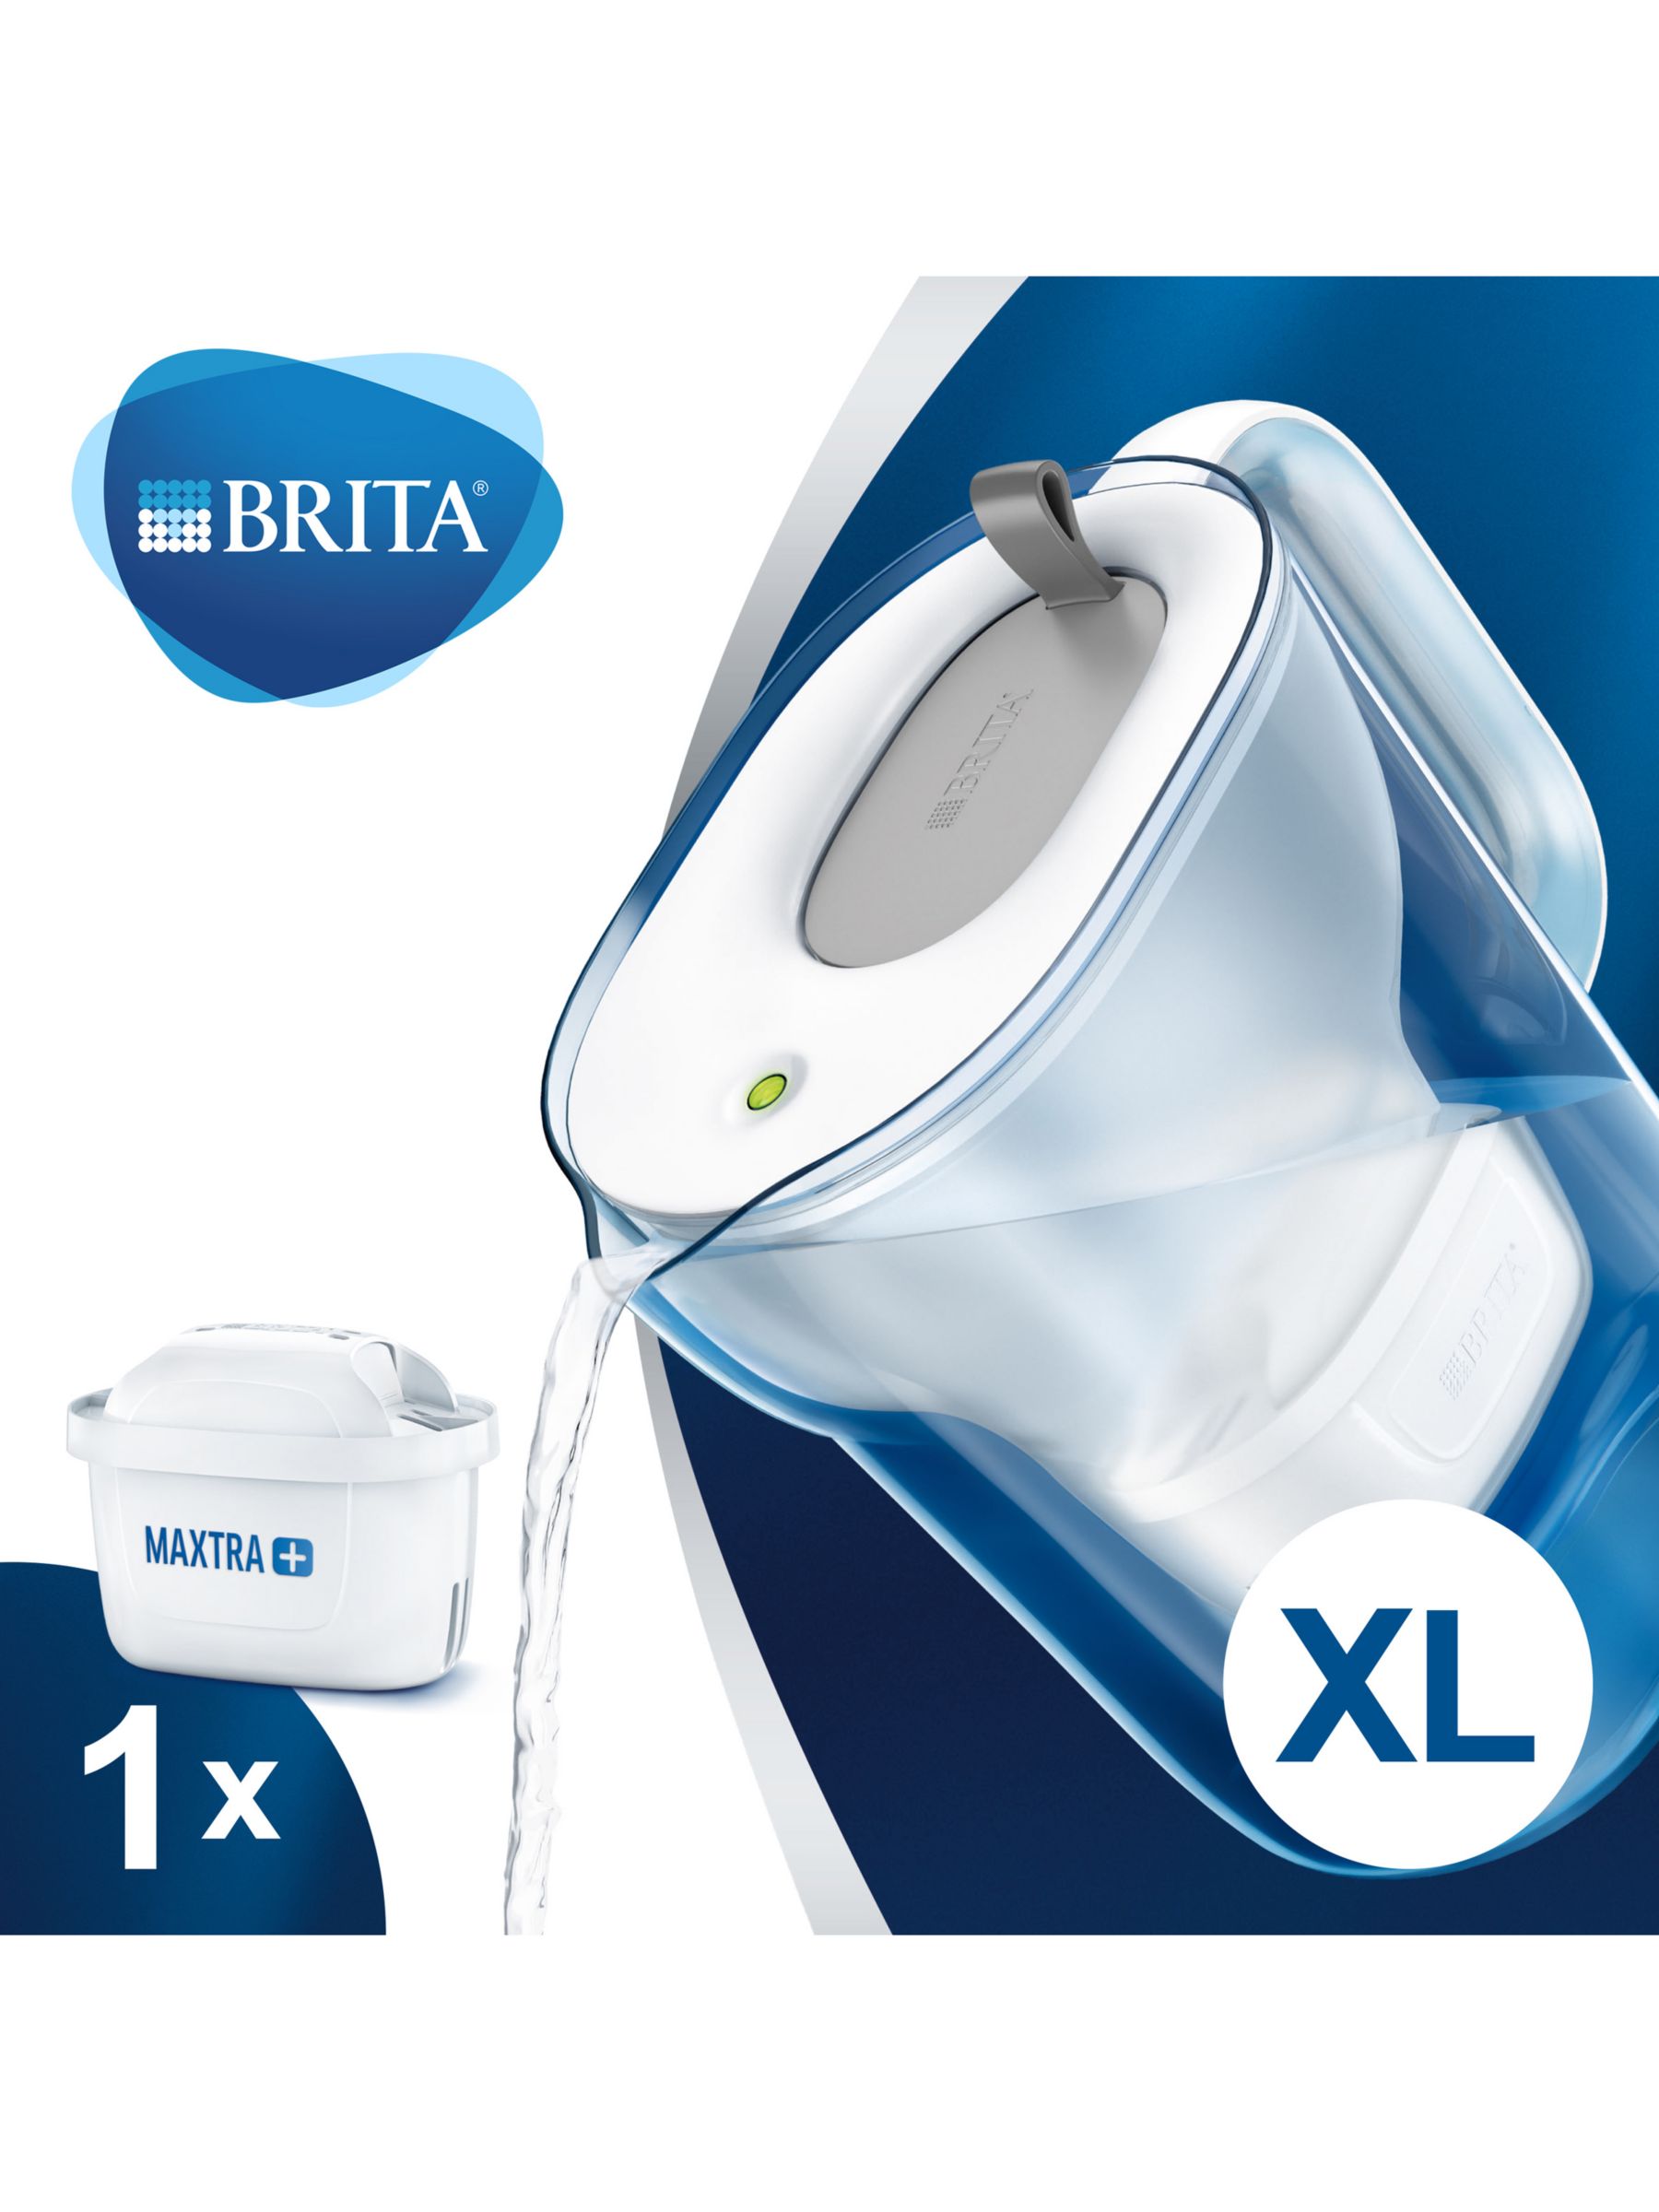 BRITA Maxtra+ XL Water Filter Jug, 3.6L,